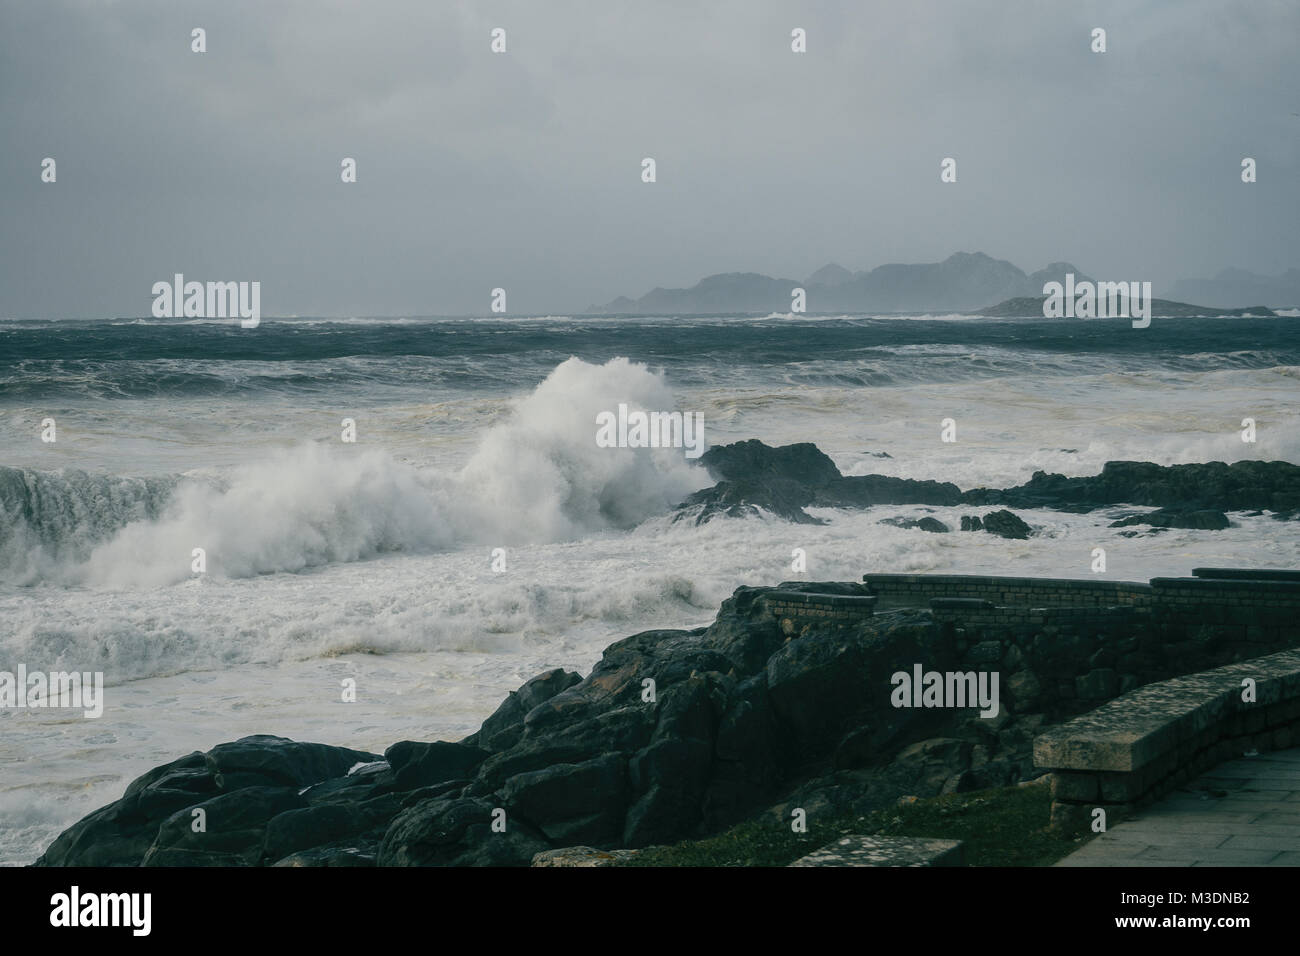 Wellen auf die Felsen an der Küste von Lugo, Galizien, Spanien brechen Stockfoto